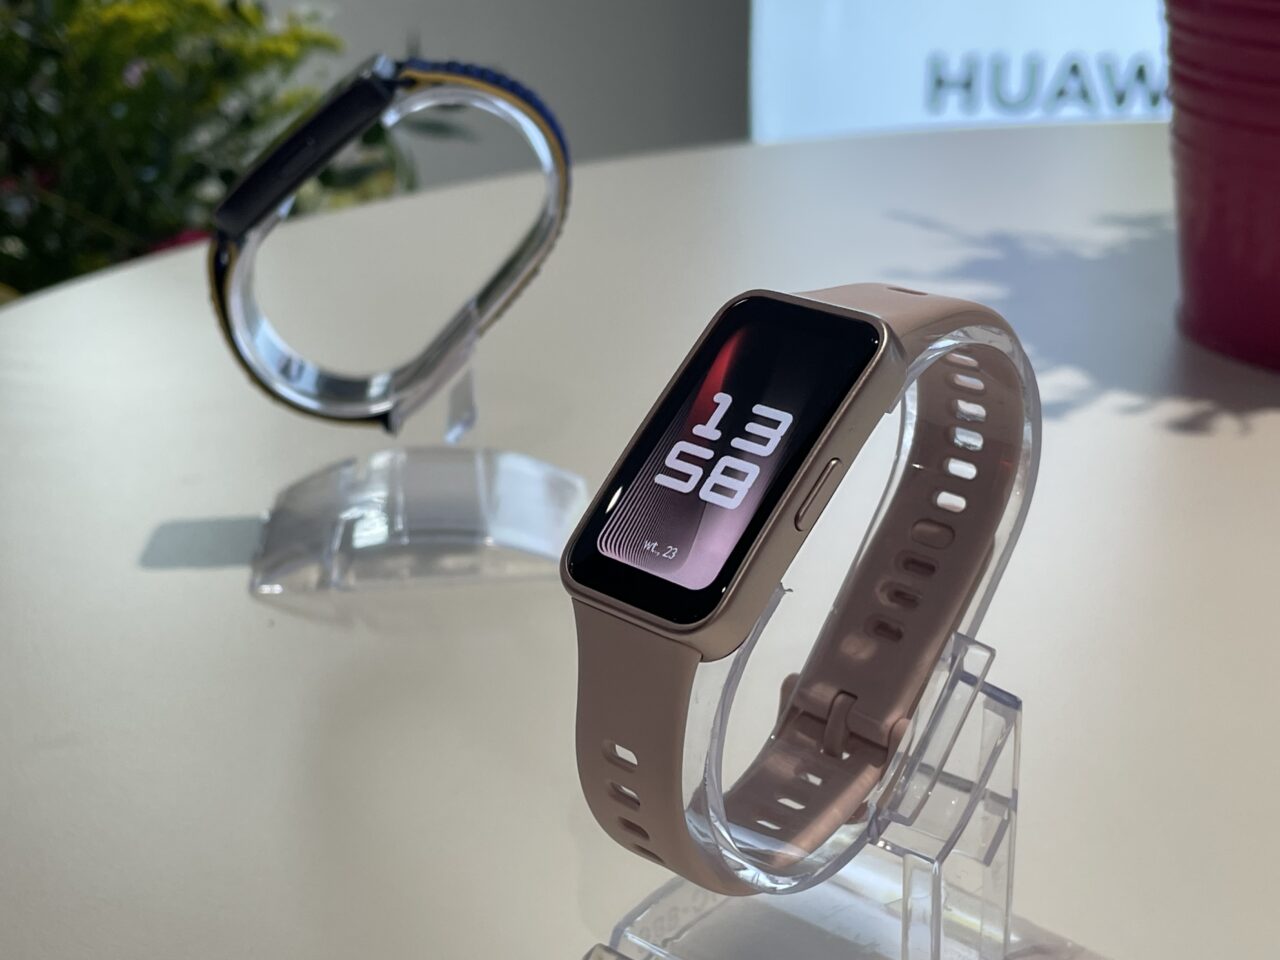 Smartwatch Huawei w różowym pasku na przezroczystym stojaku oraz drugi smartwatch z niebieskim paskiem w tle, na białym blacie przy naturalnym oświetleniu.